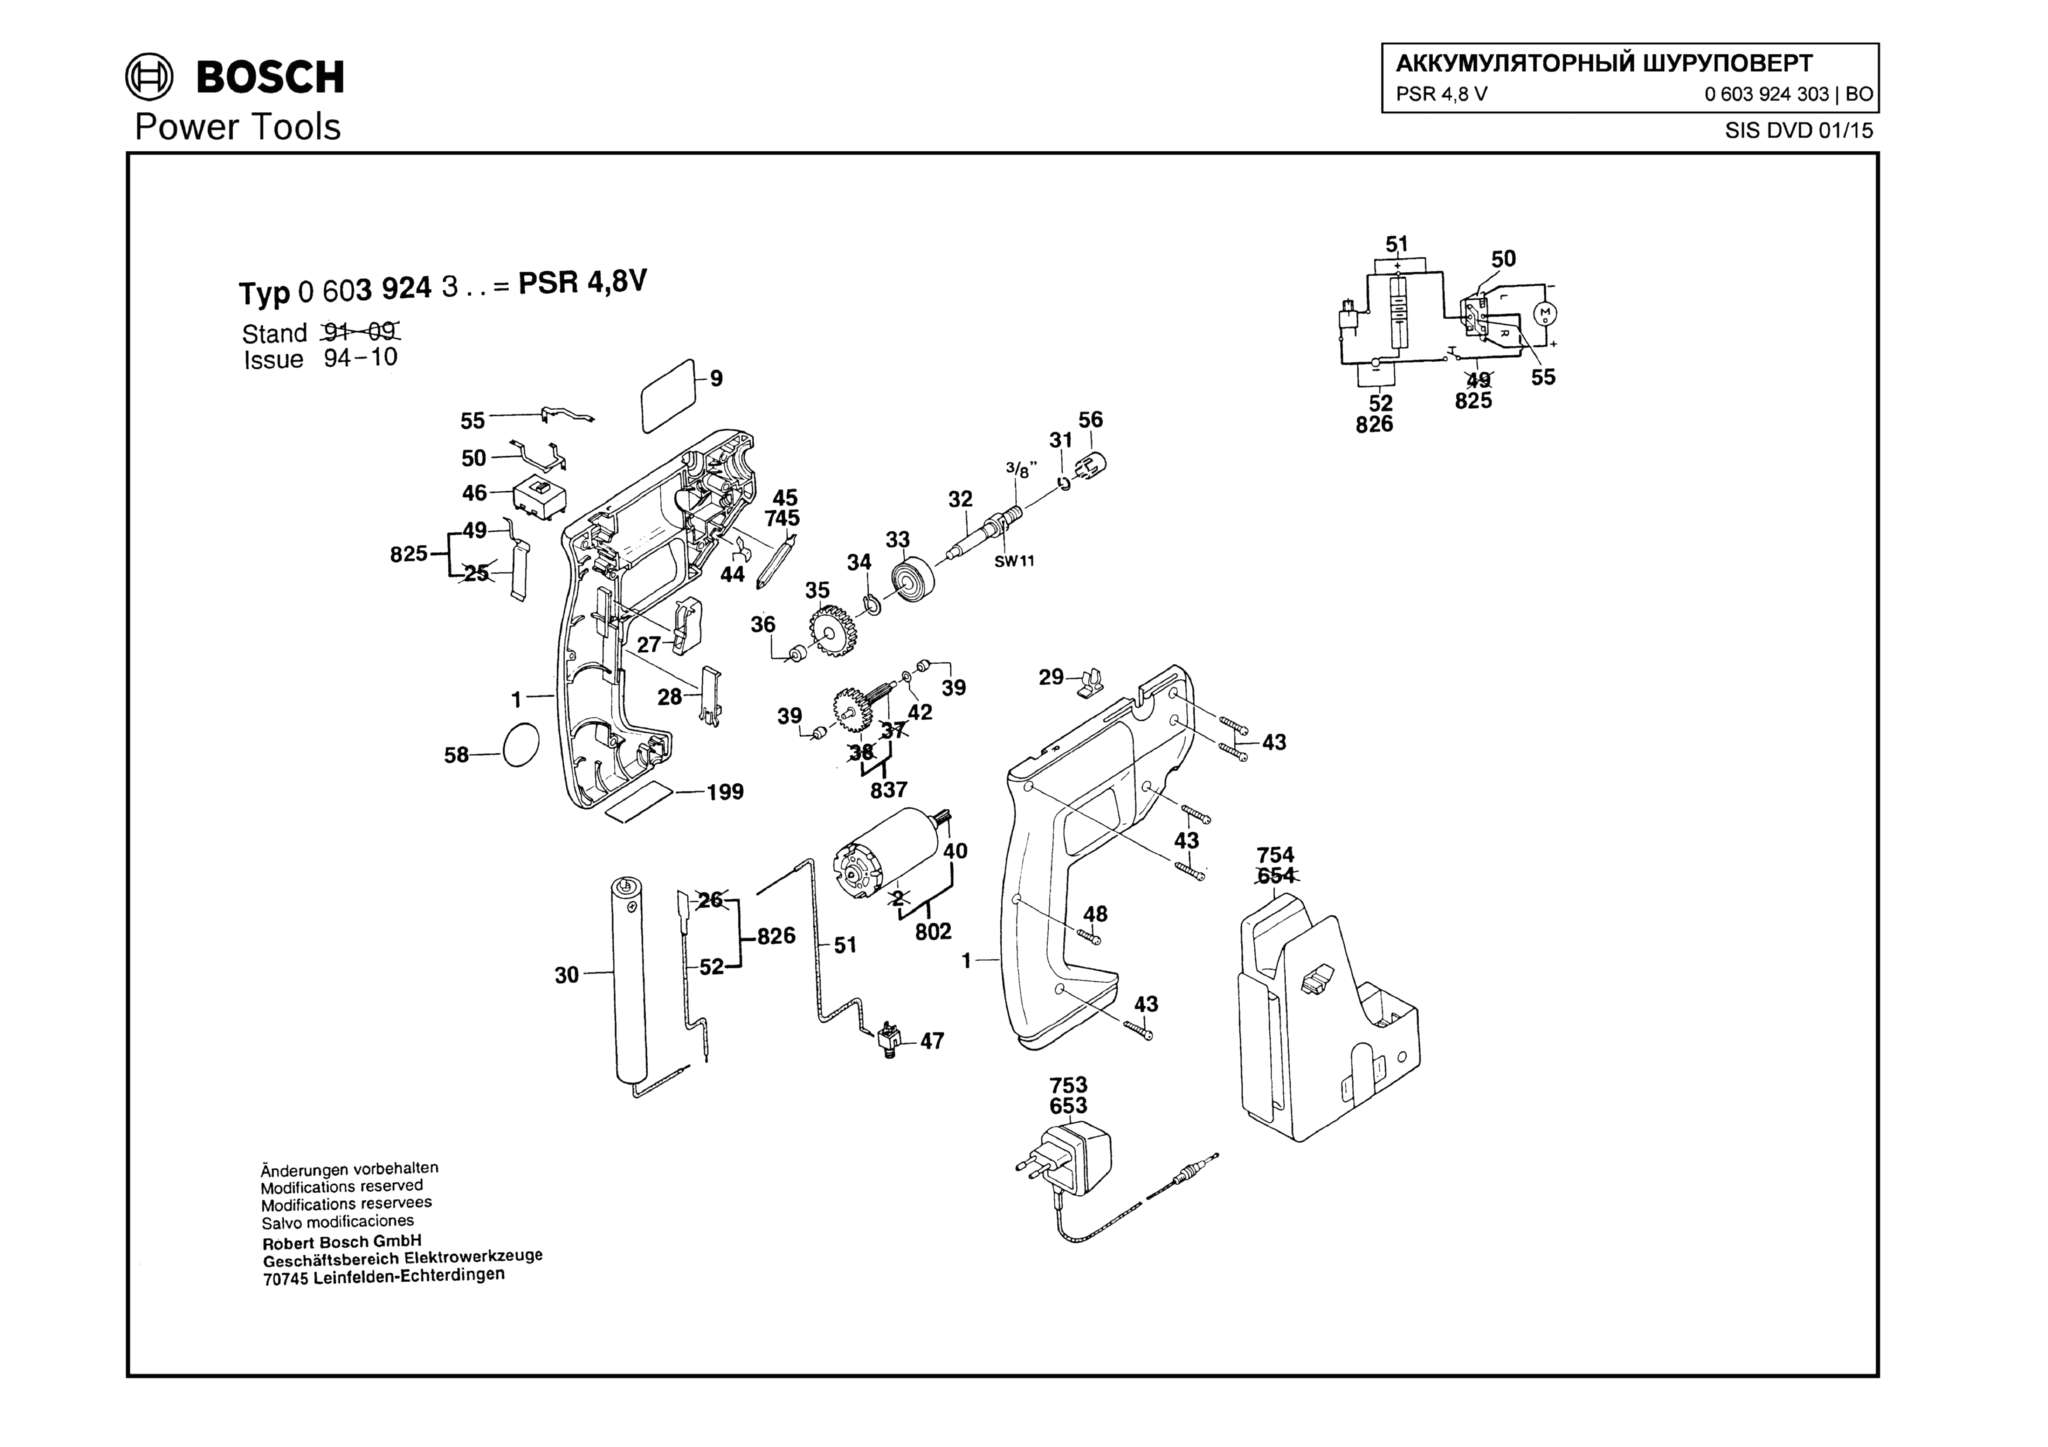 Запчасти, схема и деталировка Bosch PSR 4,8 V (ТИП 0603924303)